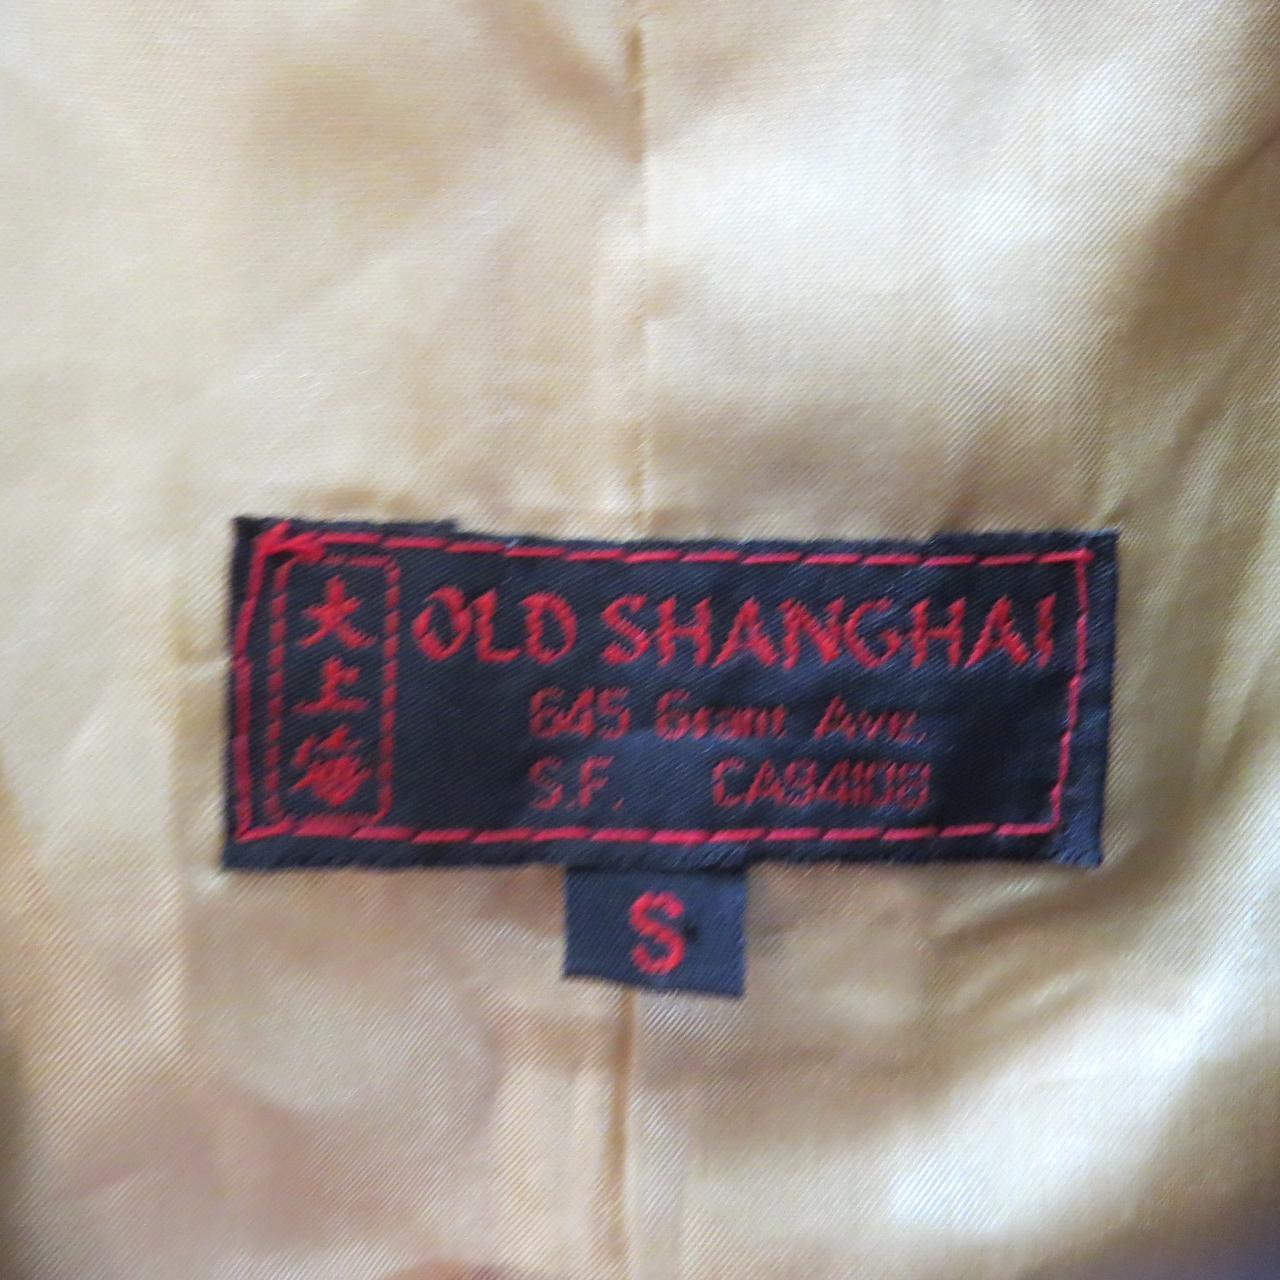 Product Image 4 - Old Shanghai Jacket
size S
San Francisco